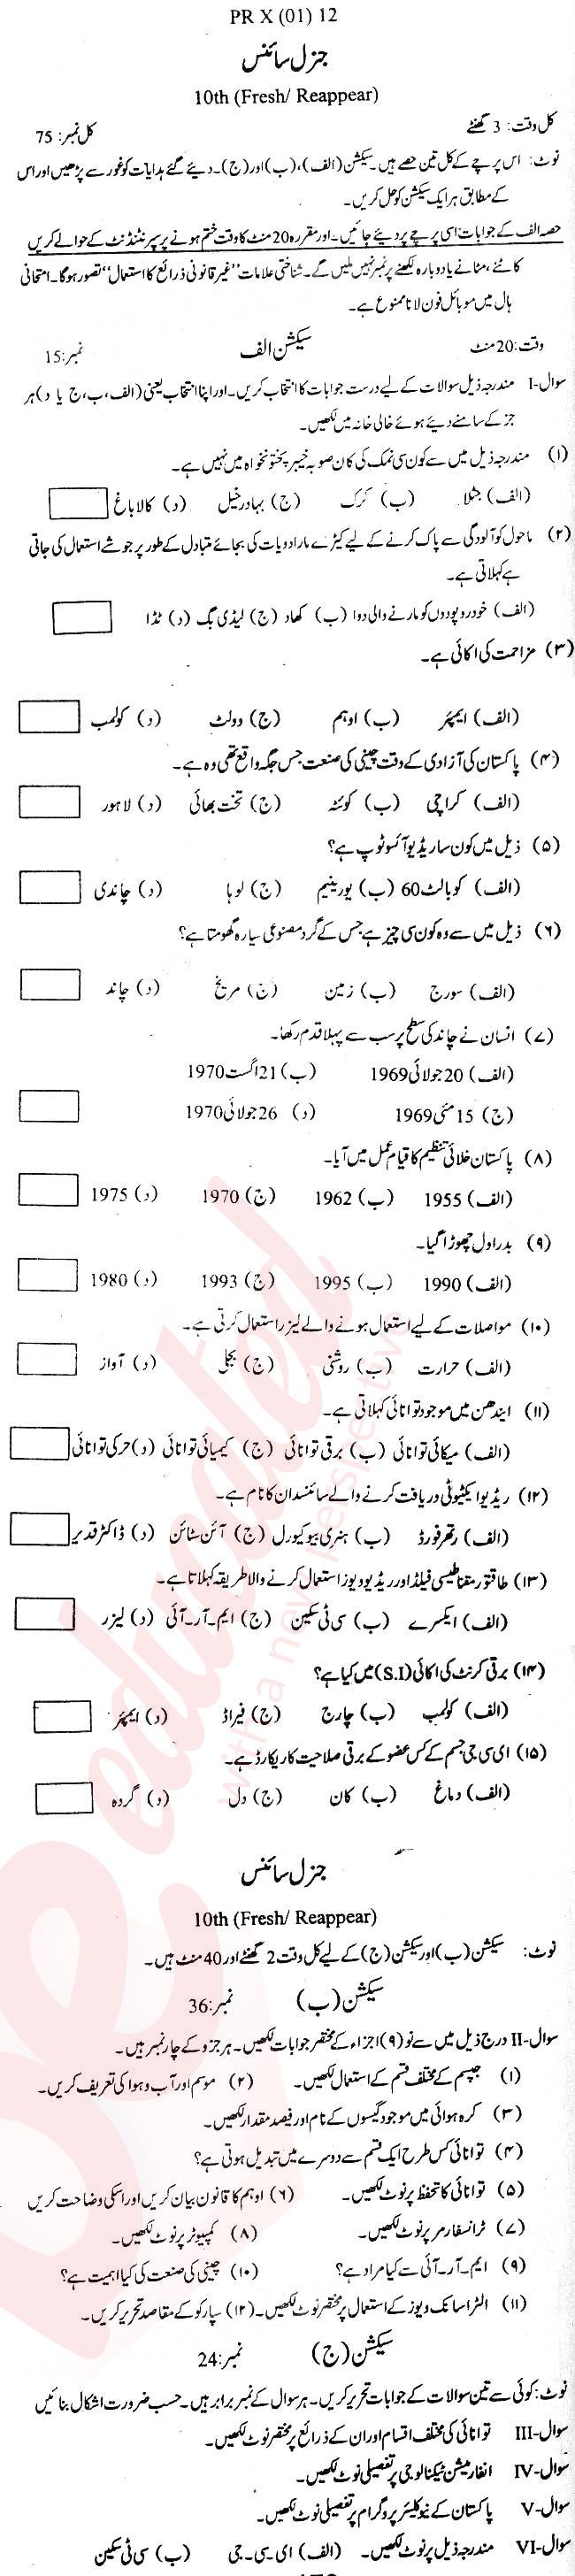 General Science 10th Urdu Medium Past Paper Group 1 BISE Swat 2012